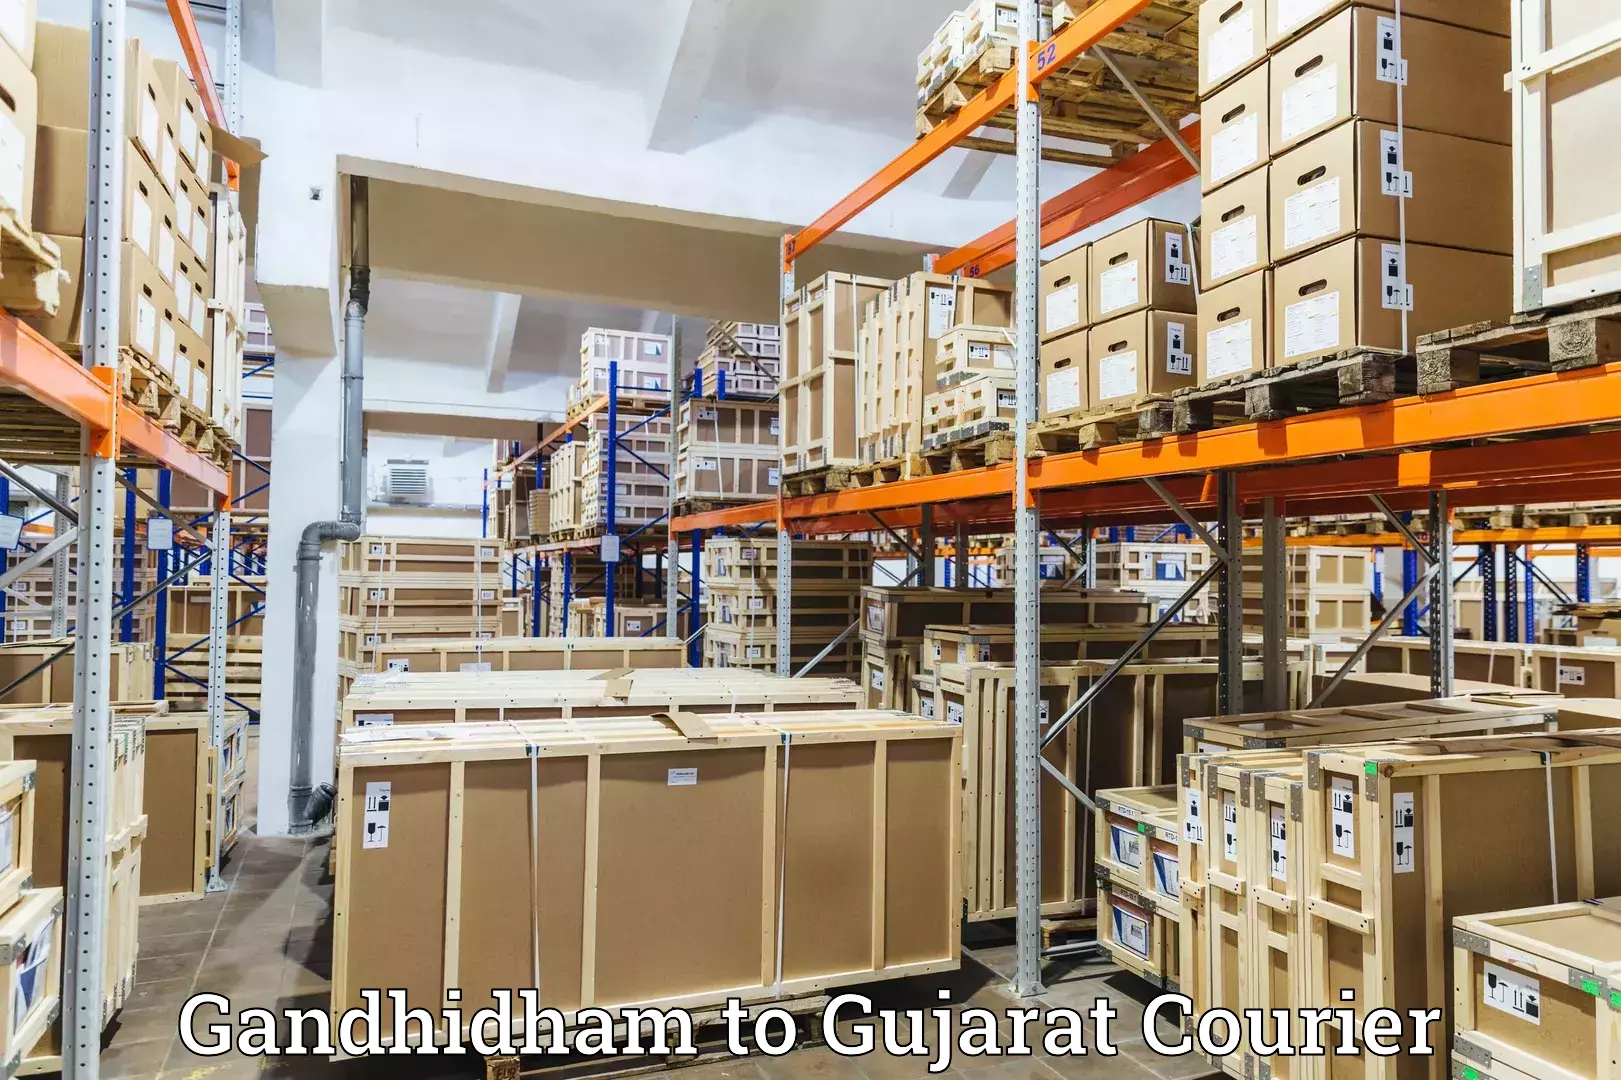 International courier networks Gandhidham to NIT Surat